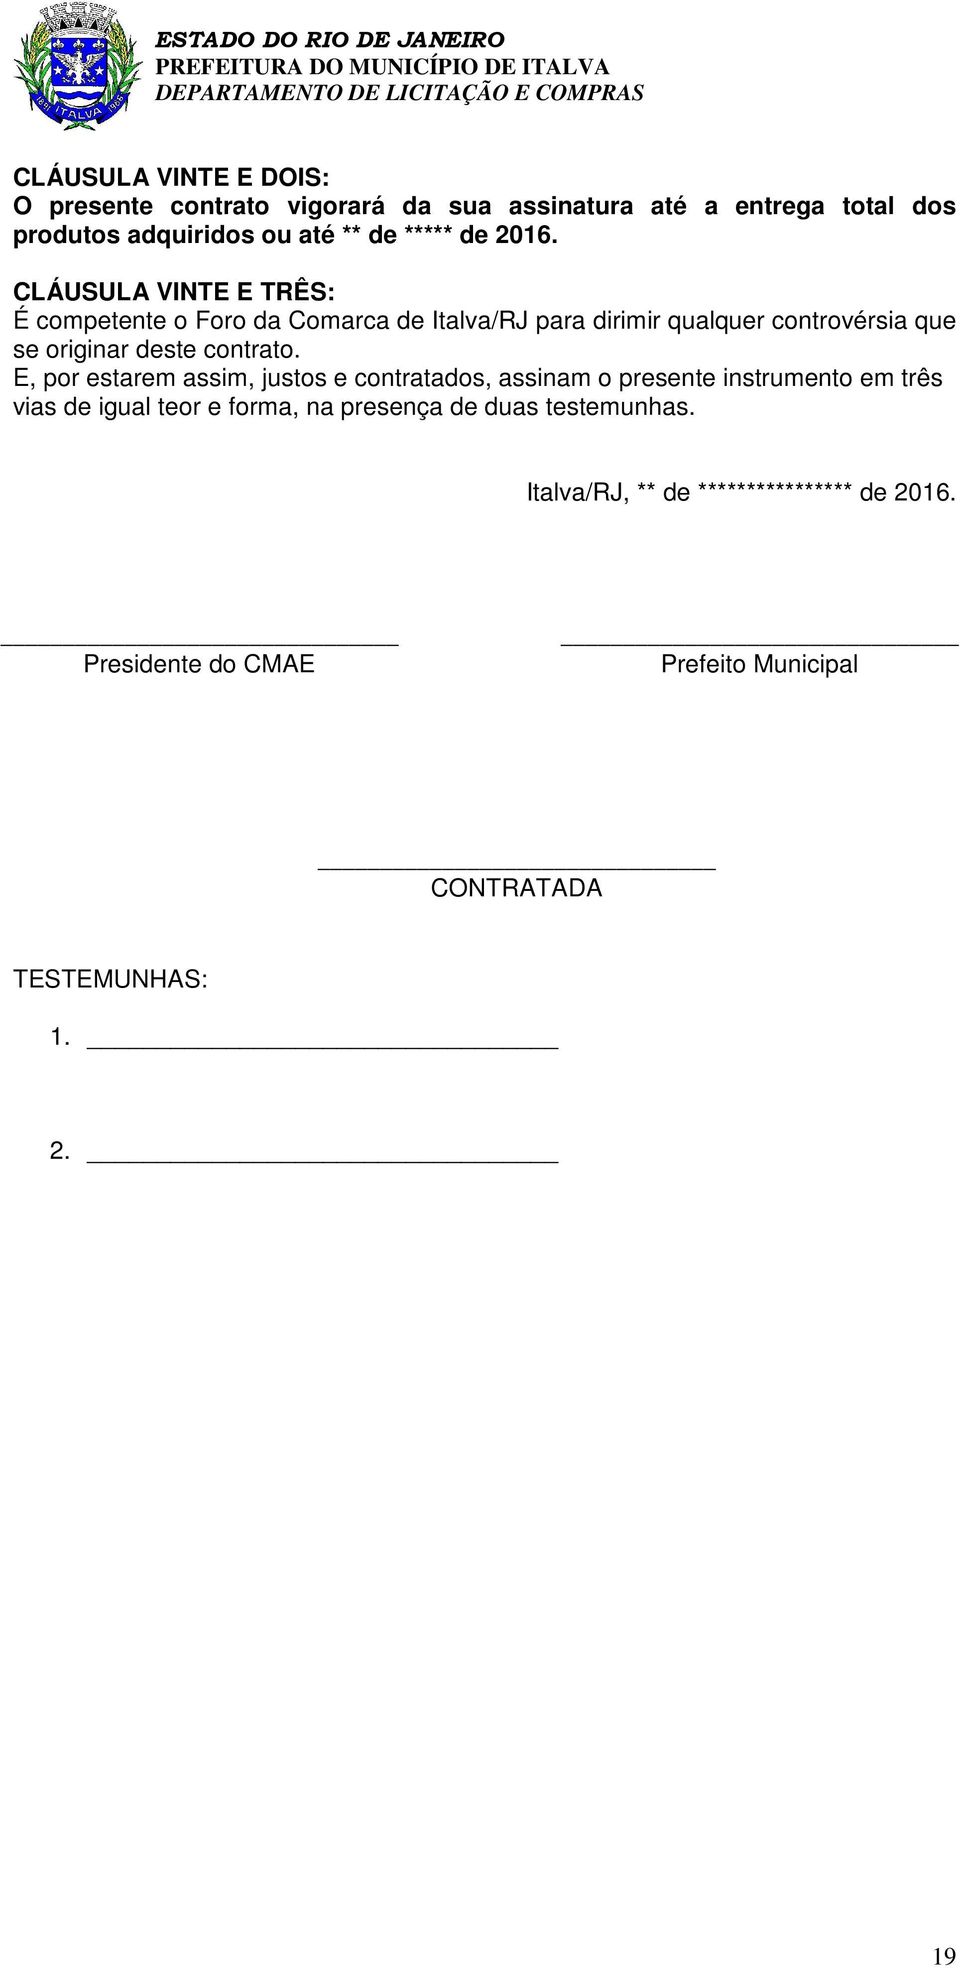 CLÁUSULA VINTE E TRÊS: É competente o Foro da Comarca de Italva/RJ para dirimir qualquer controvérsia que se originar deste contrato.